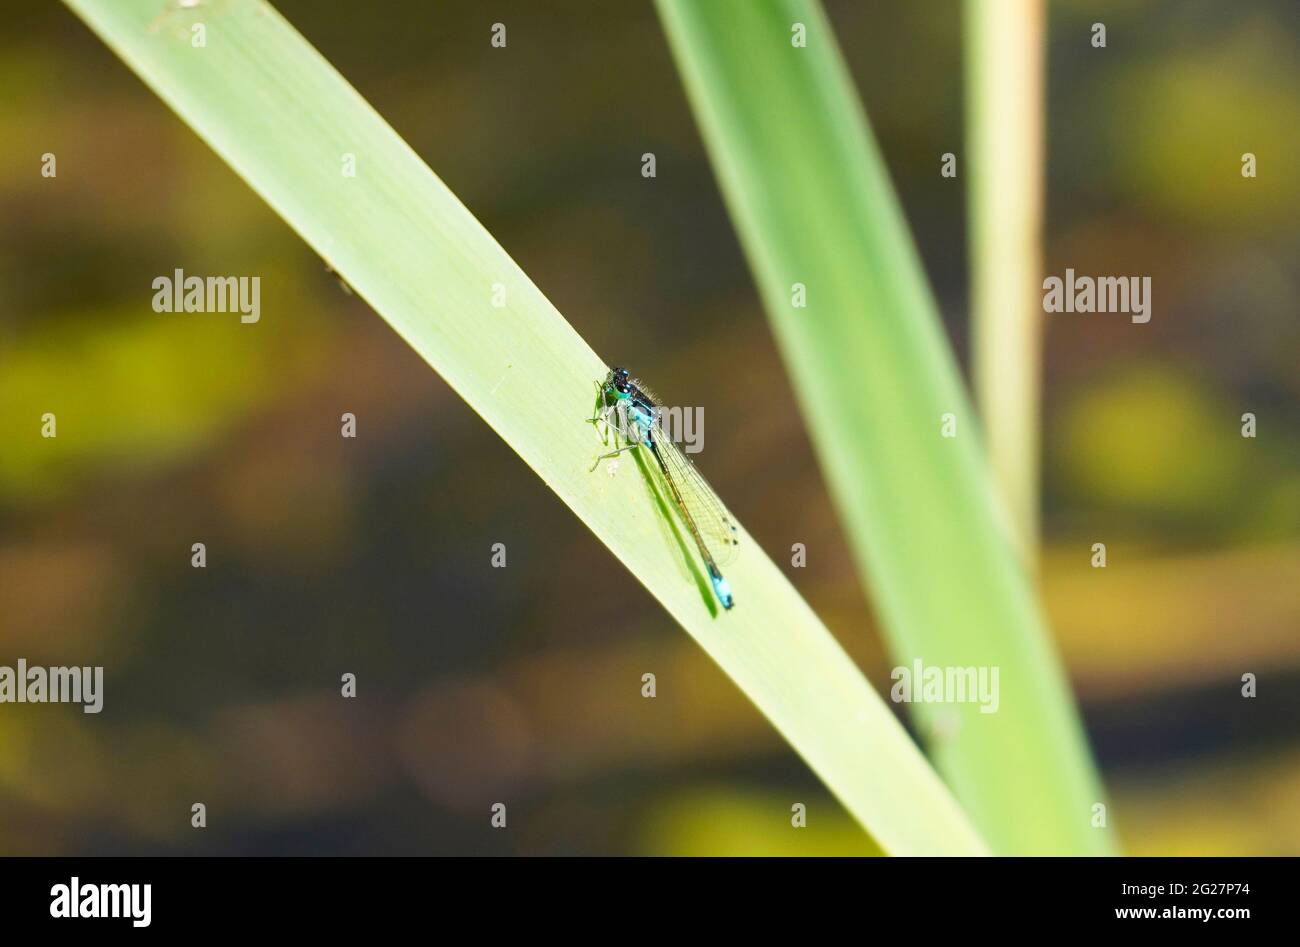 Le Spear Azure Maiden se trouve sur une lame d'herbe verte. Gros plan sur la libellule dans un environnement naturel. Banque D'Images